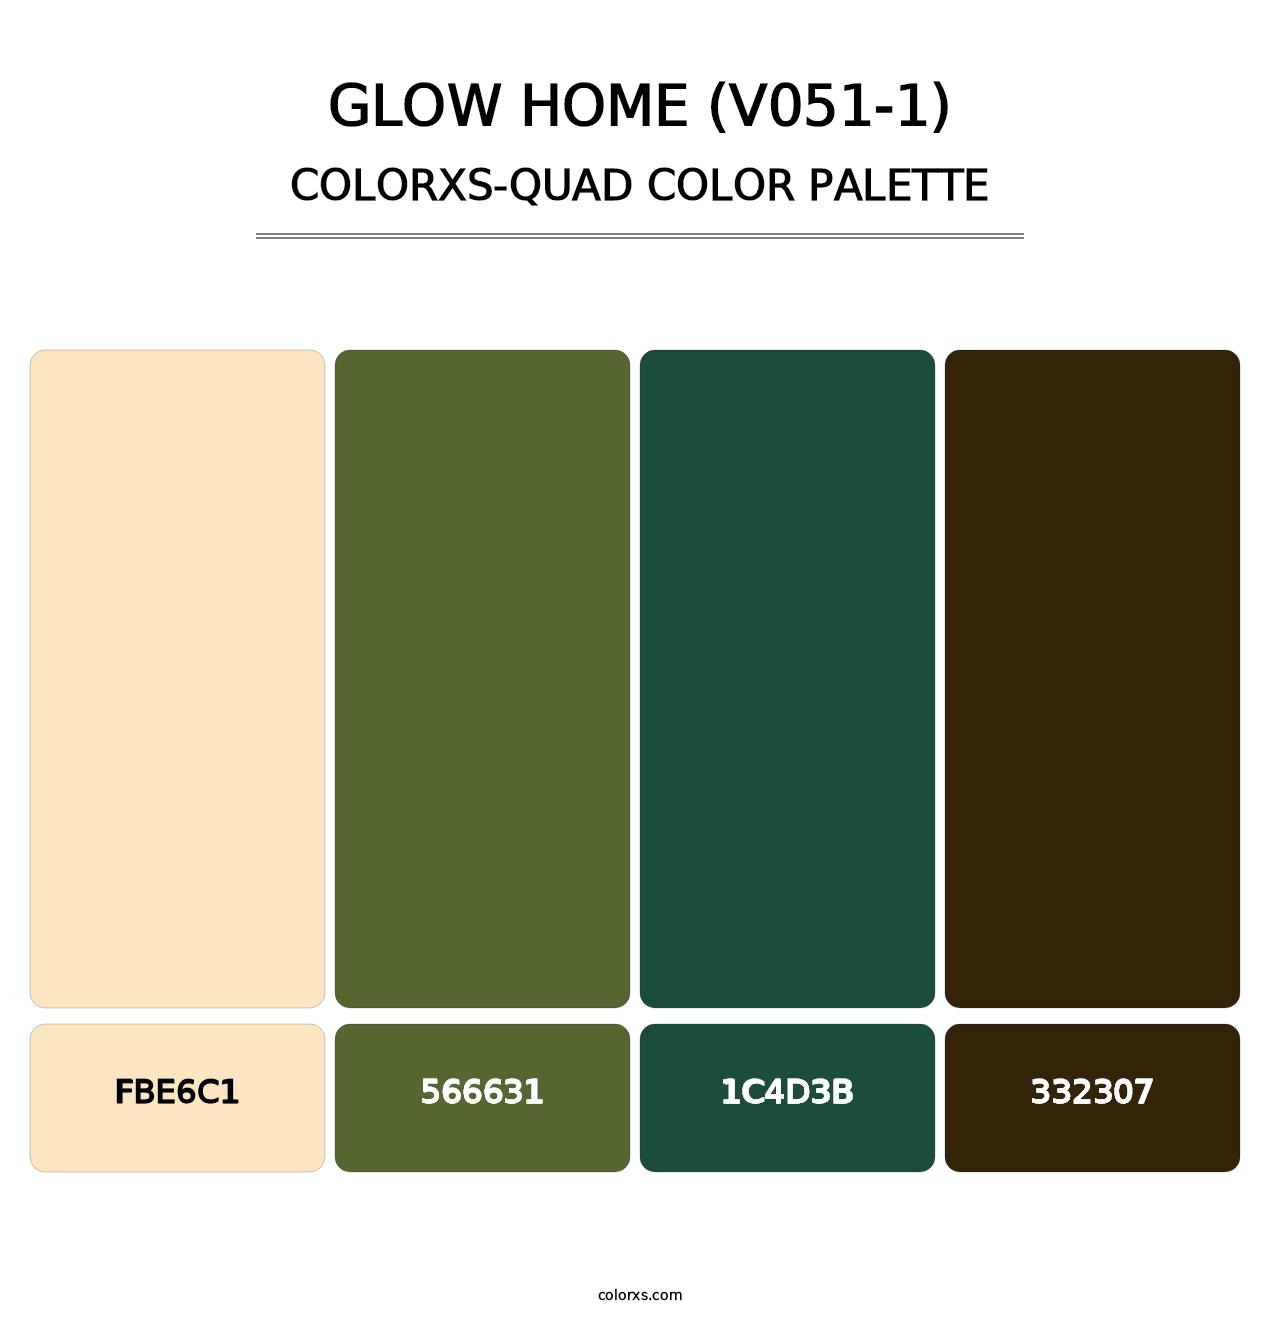 Glow Home (V051-1) - Colorxs Quad Palette